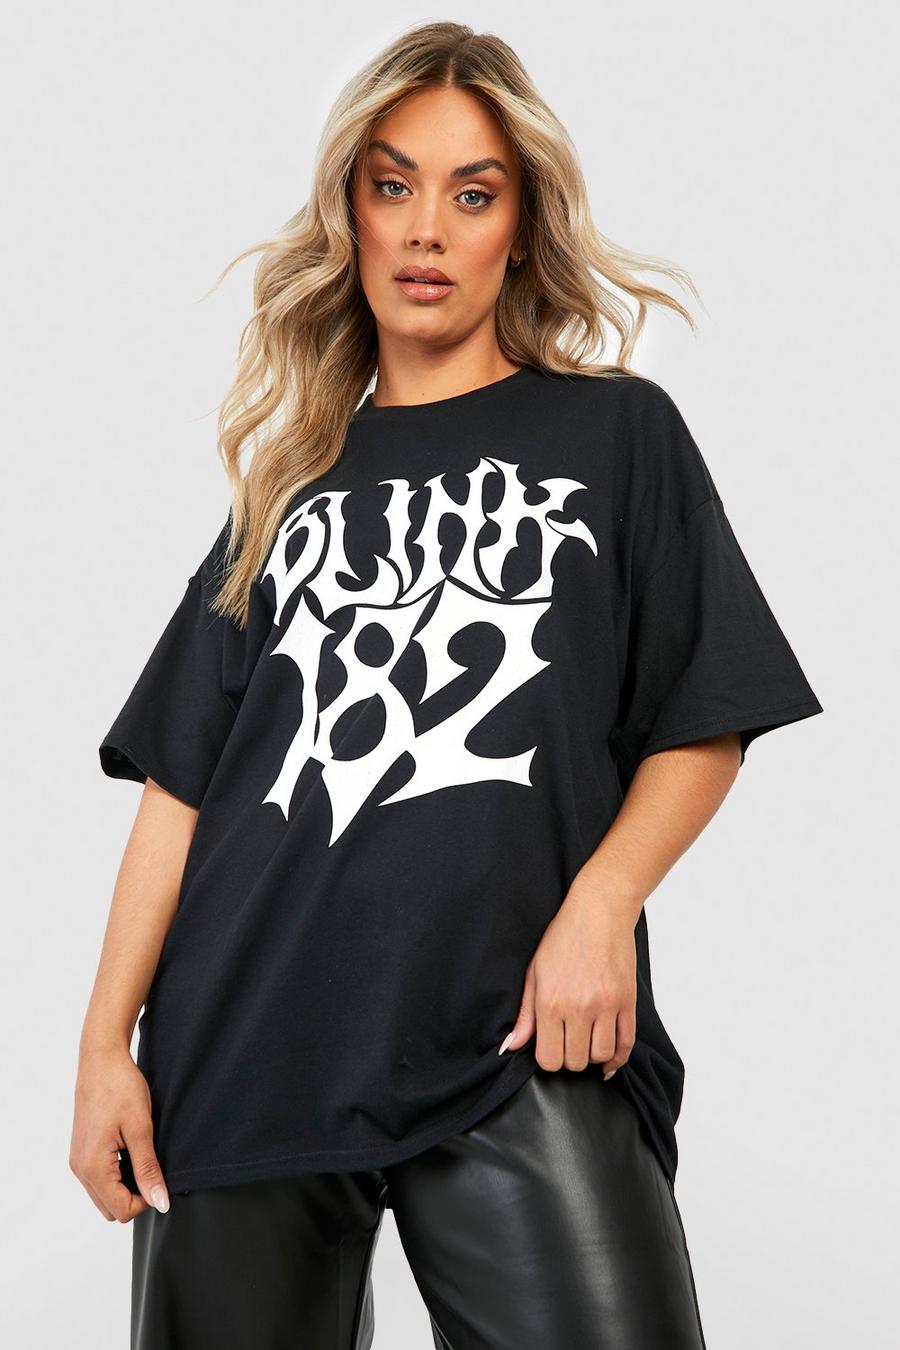 Black svart Plus Oversized Blink 182 License T-shirt